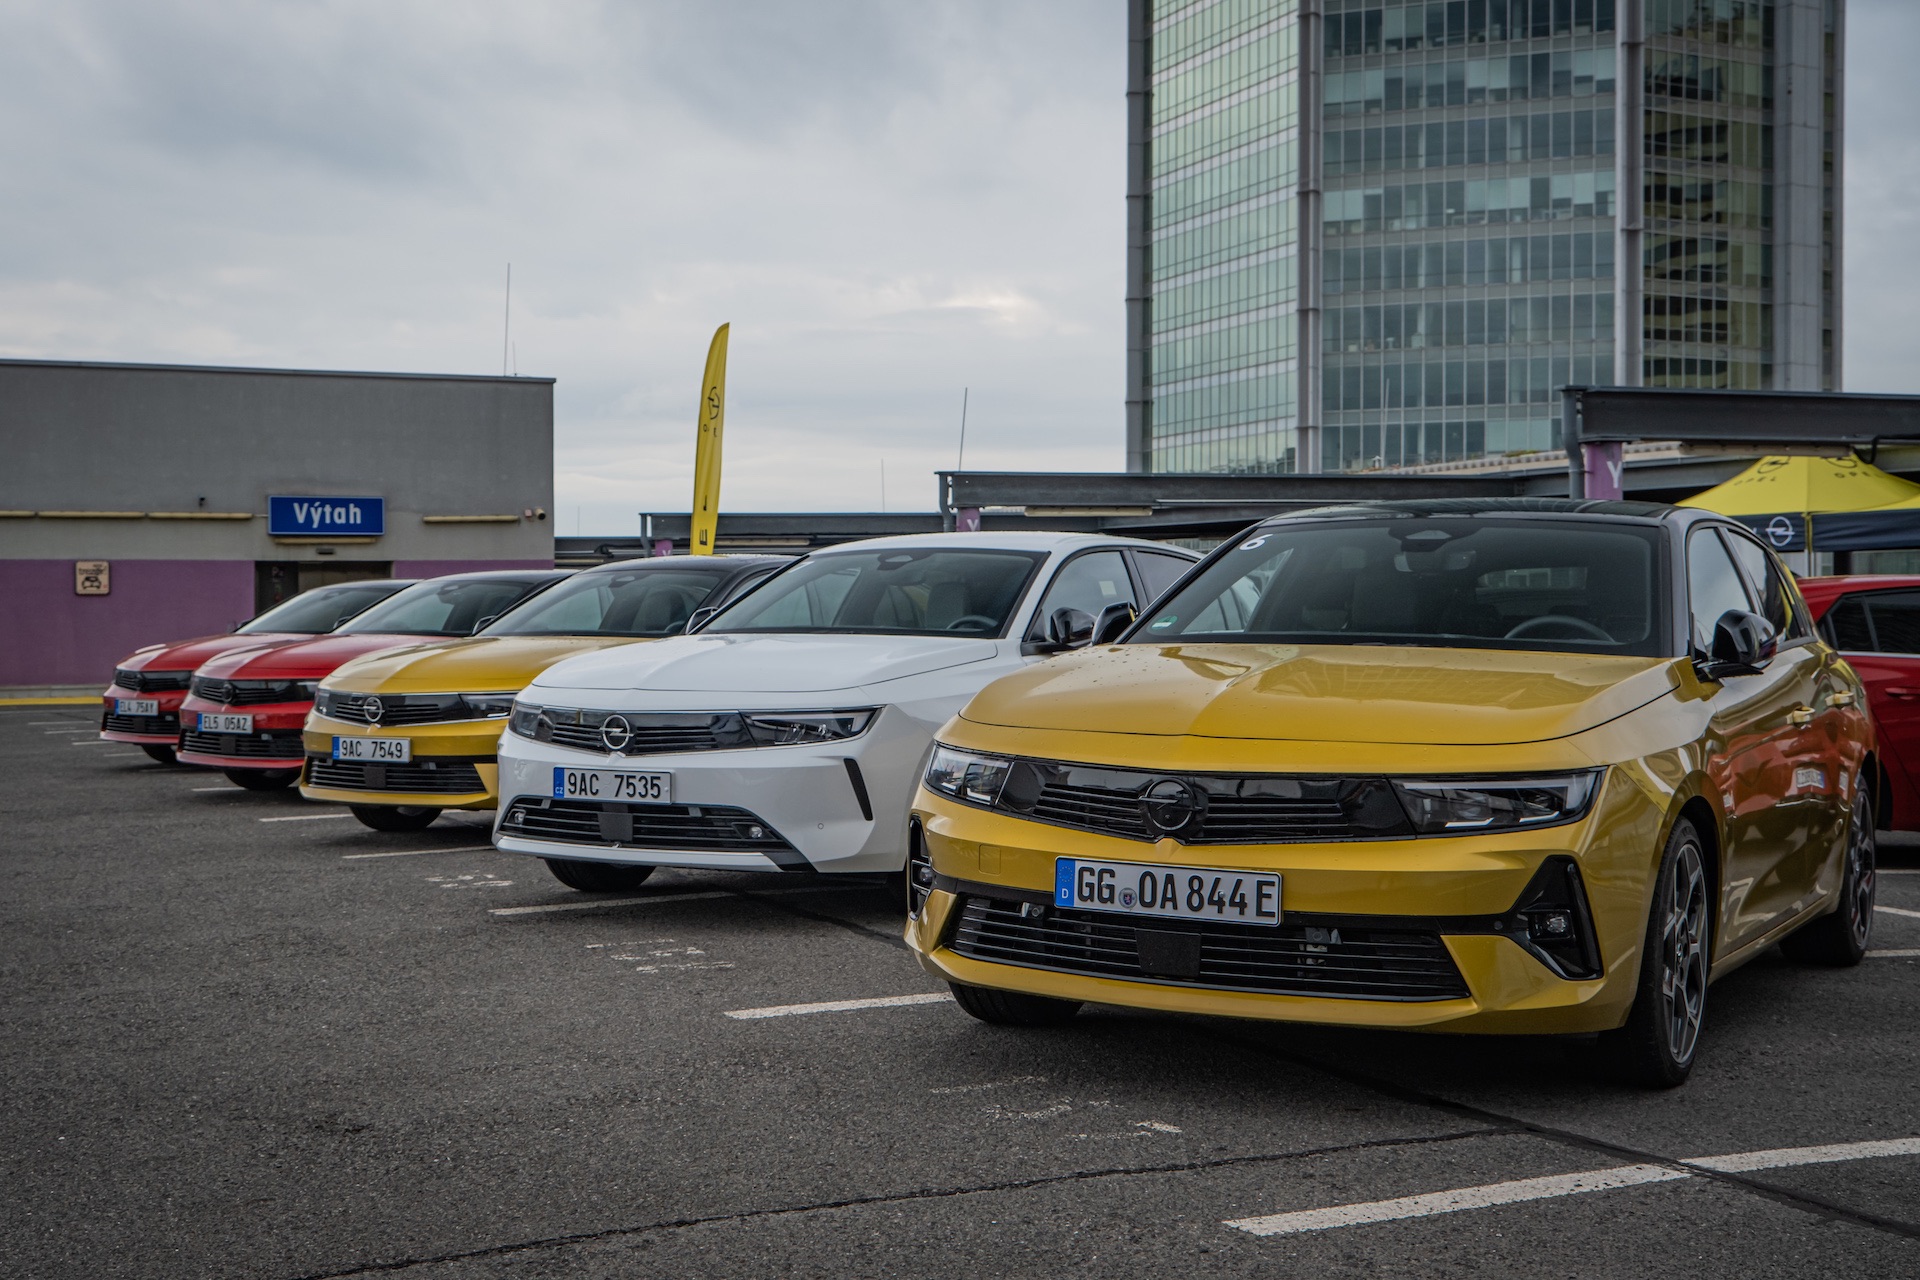 La nuova Opel Astra arriva in Repubblica Ceca: il primo giro ci ha davvero sorpreso